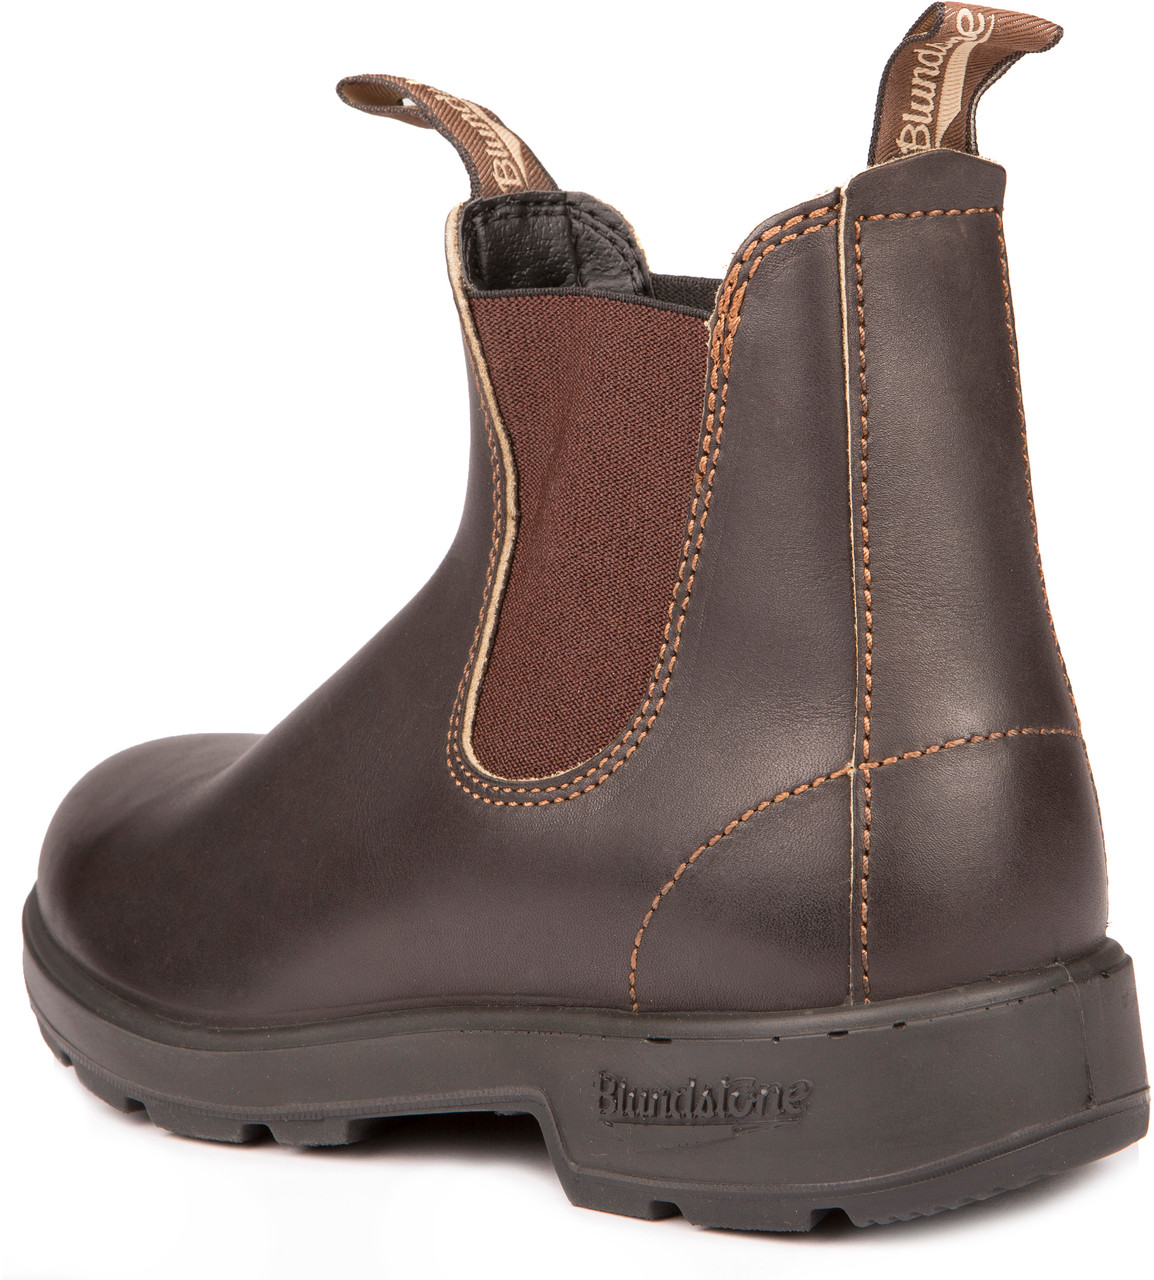 Blundstone Original 500 Boots - Unisex | MEC